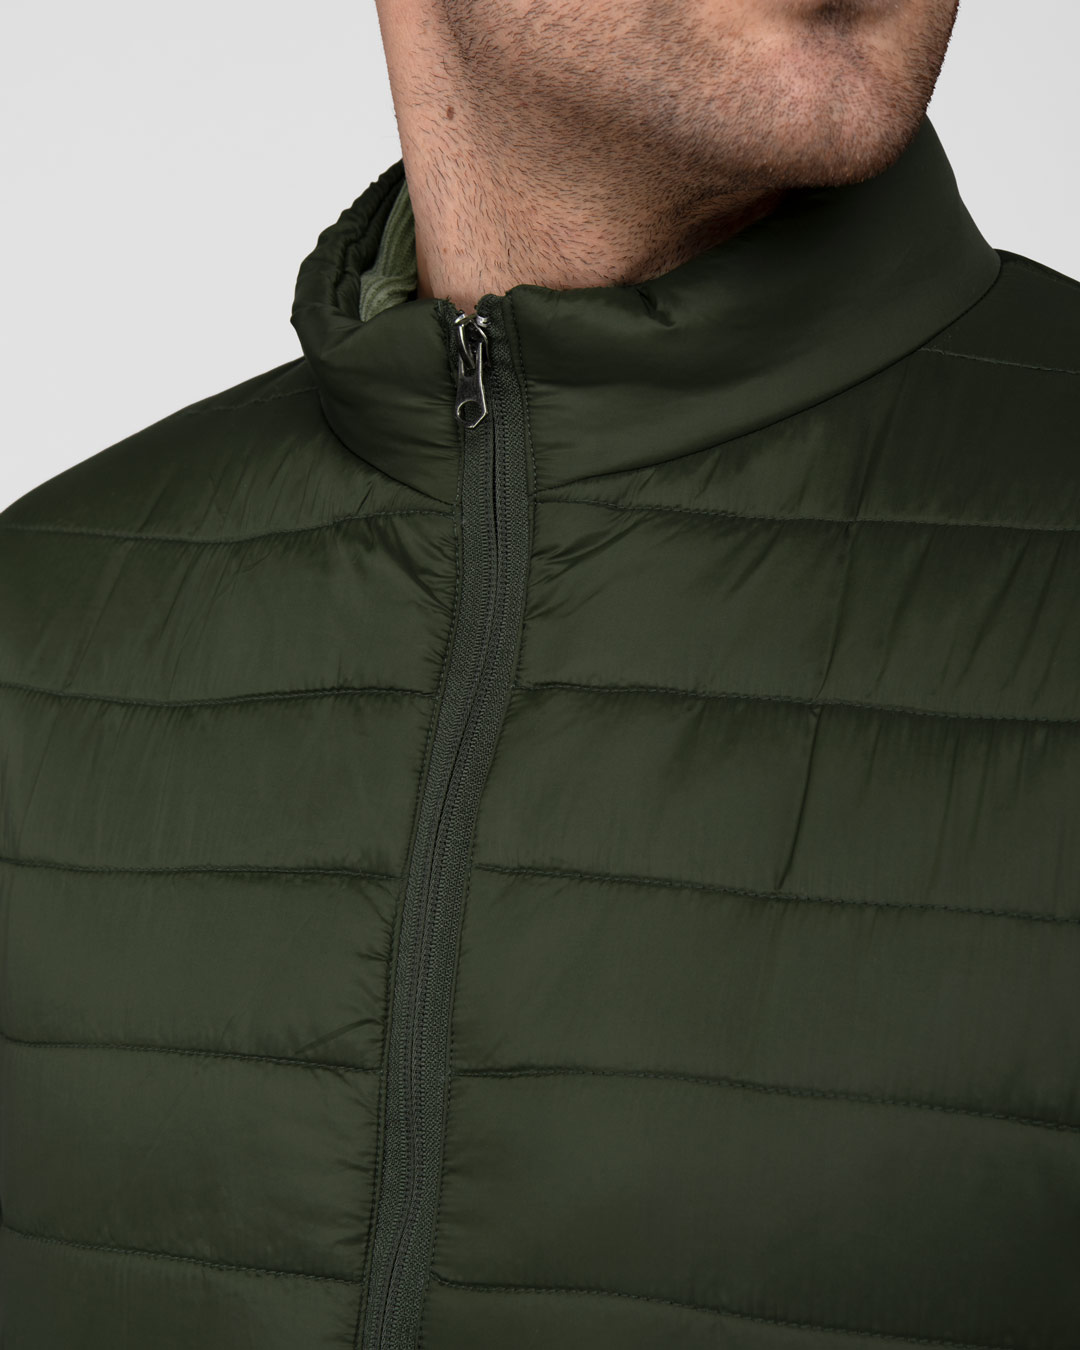 U06 - Men's Jacket in Genuine Green Leather - Jacket - LeatherTrend.it